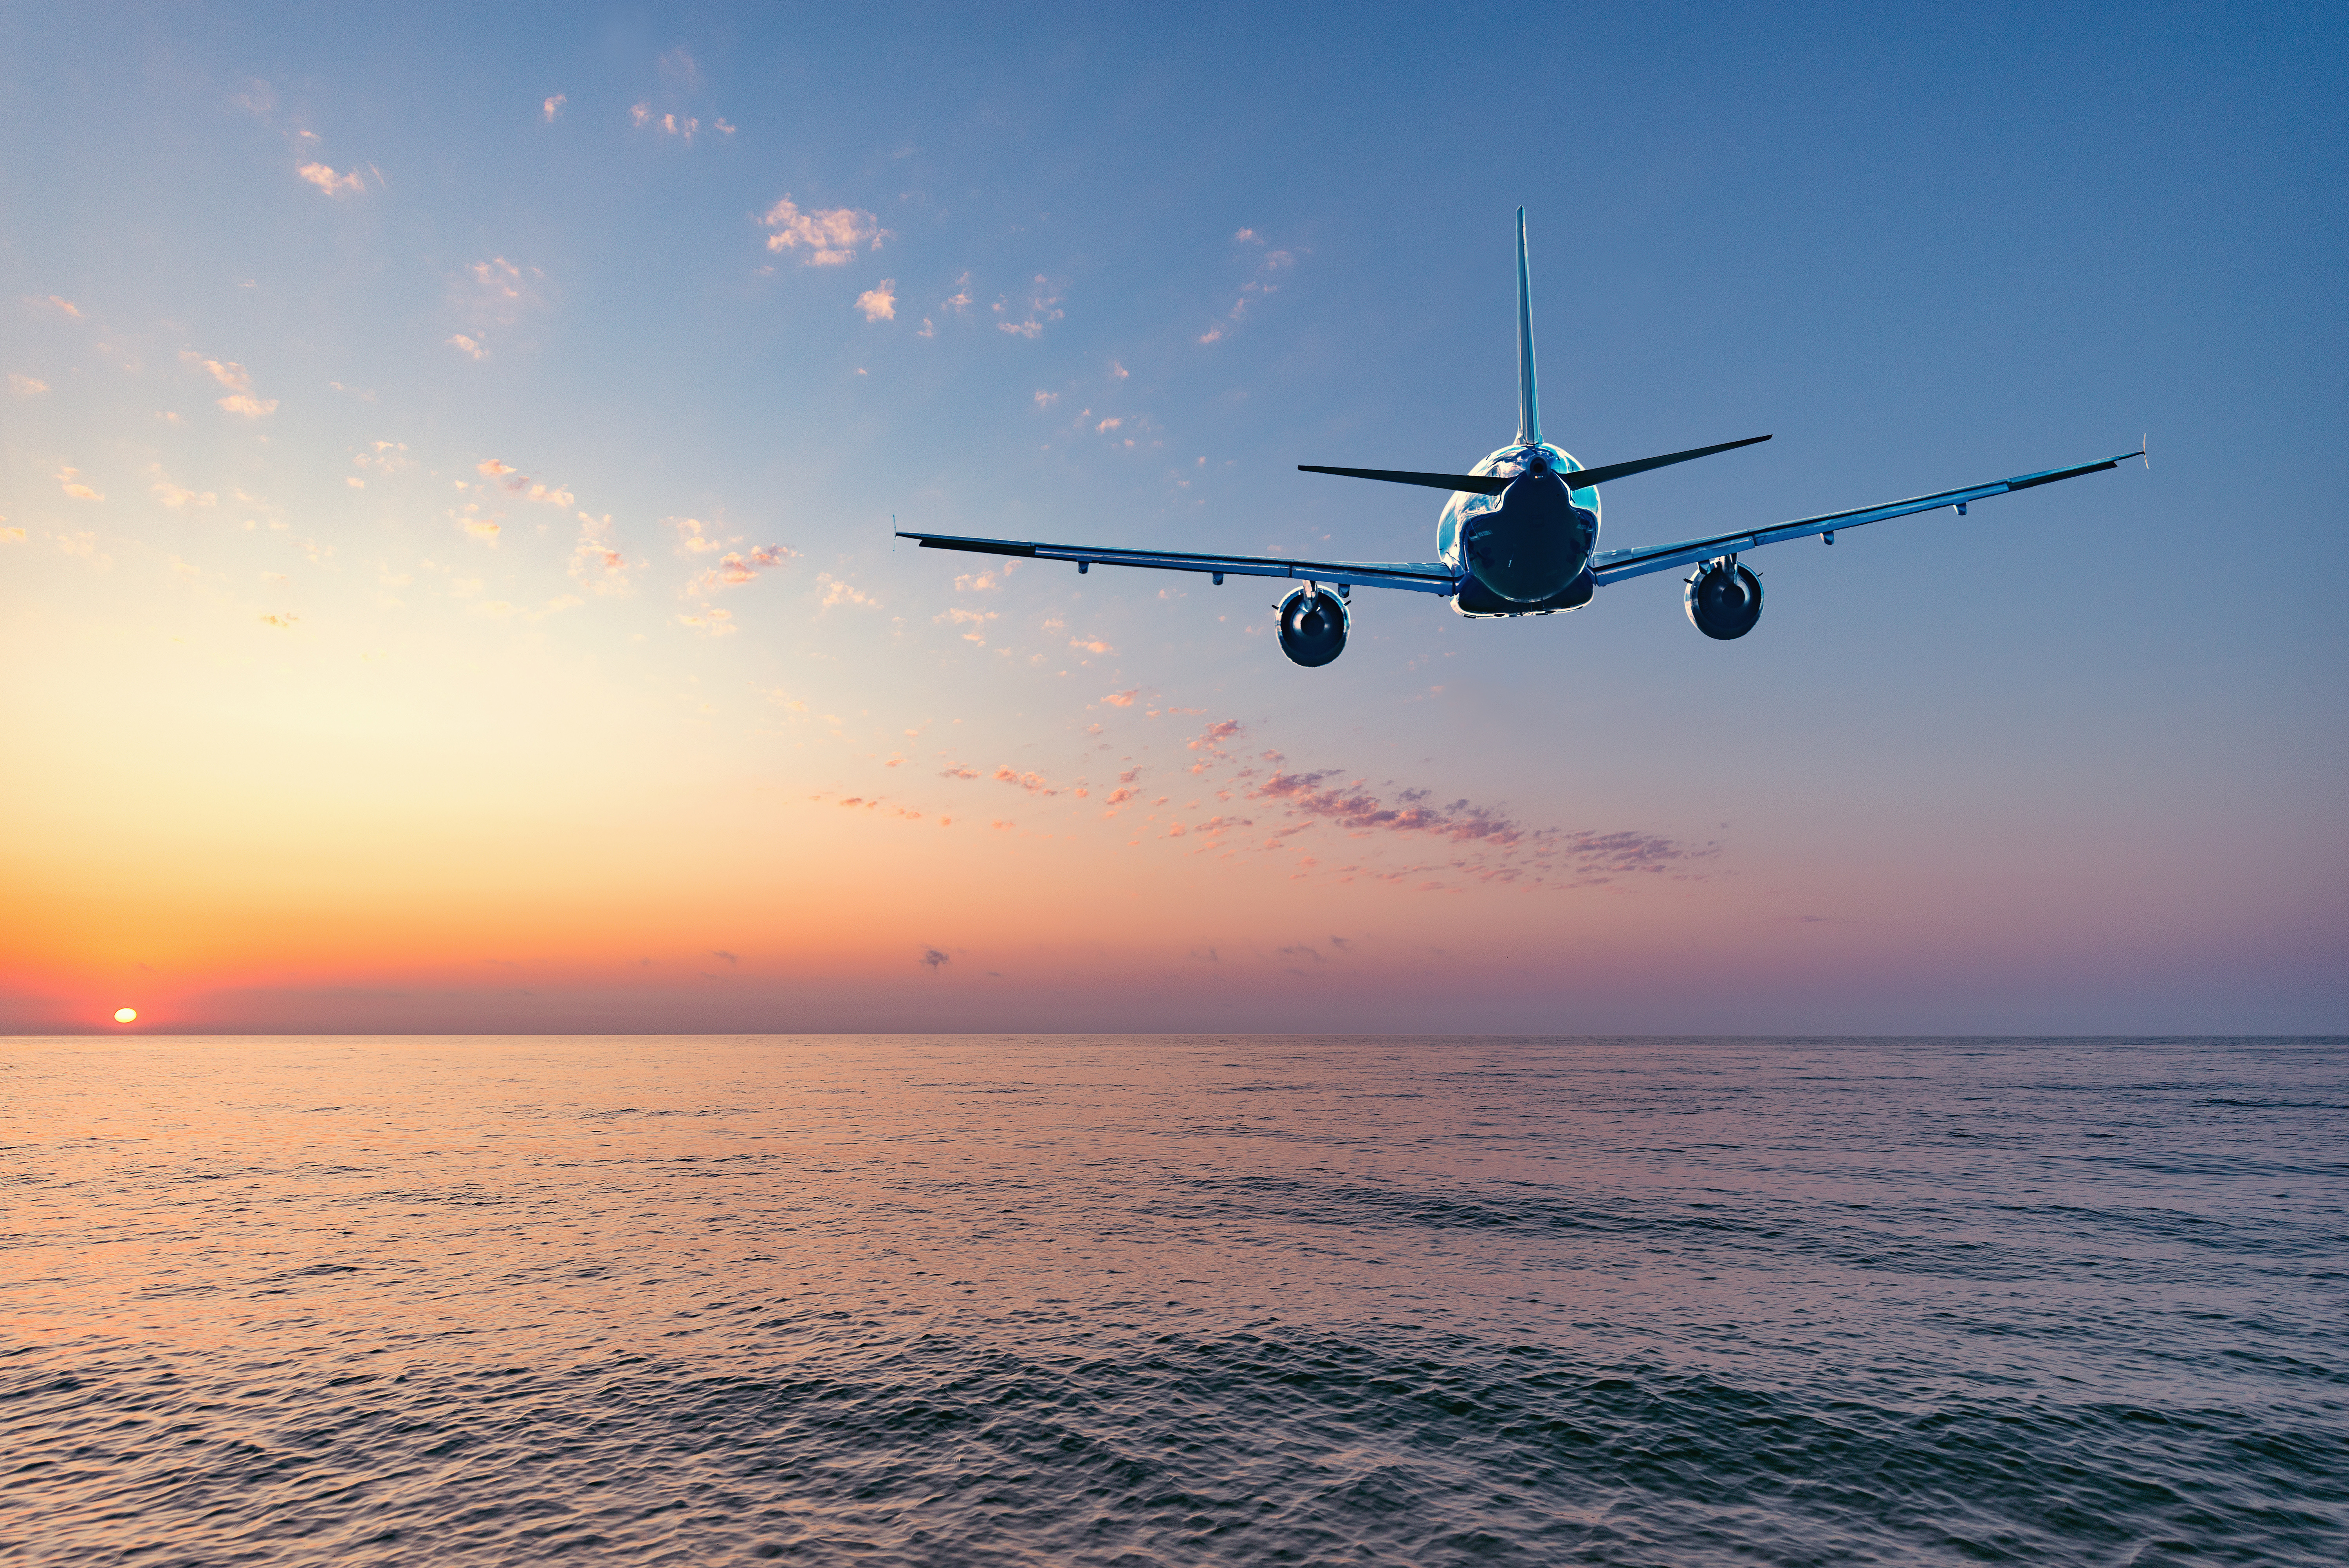     Les billets d'avion vers les Antilles vont coûter plus cher 

